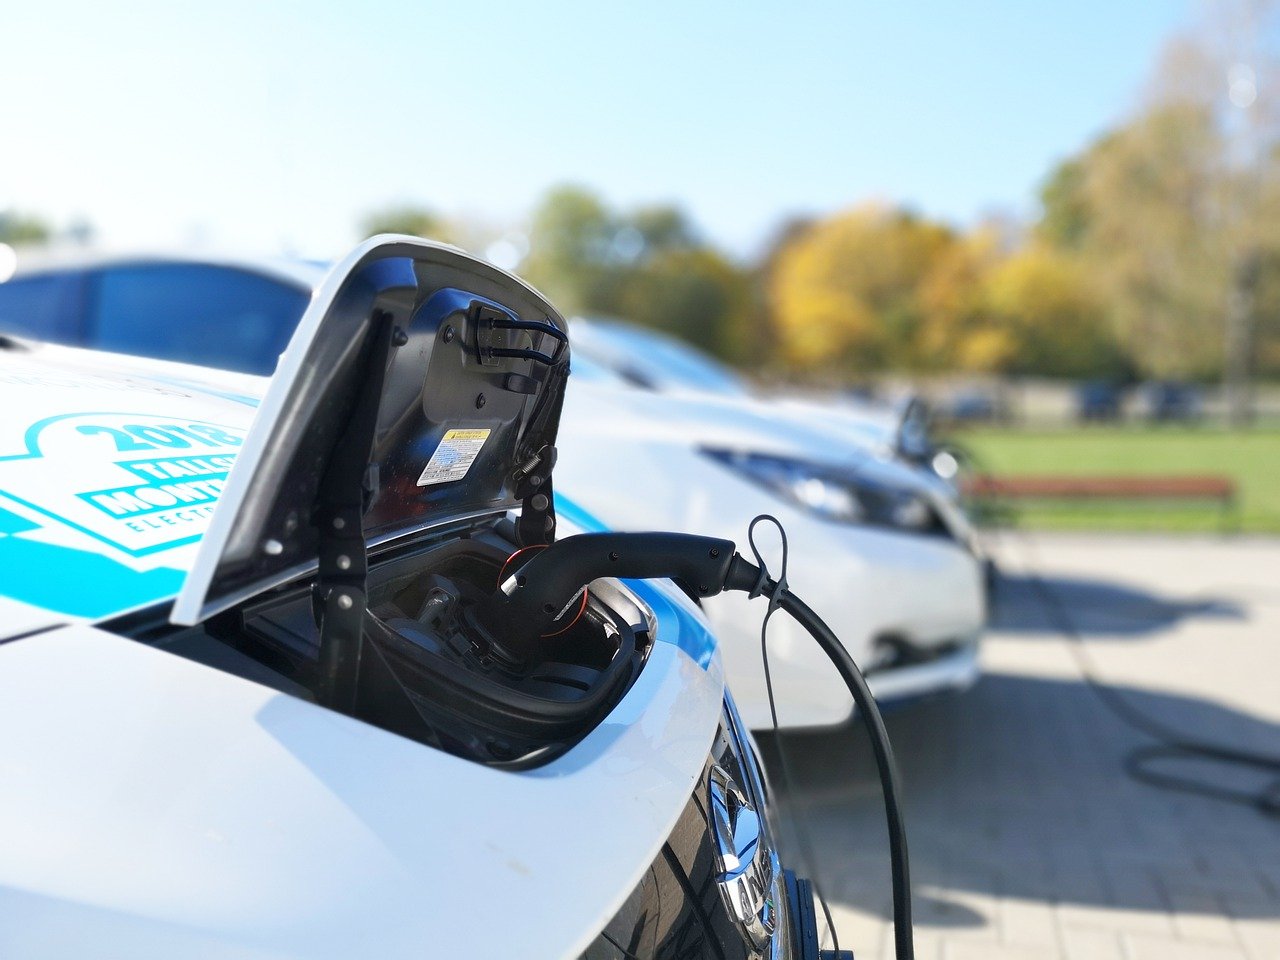 Nissan trouve de nouvelles utilisations pour les batteries mortes dans les véhicules électriques [vidéo]